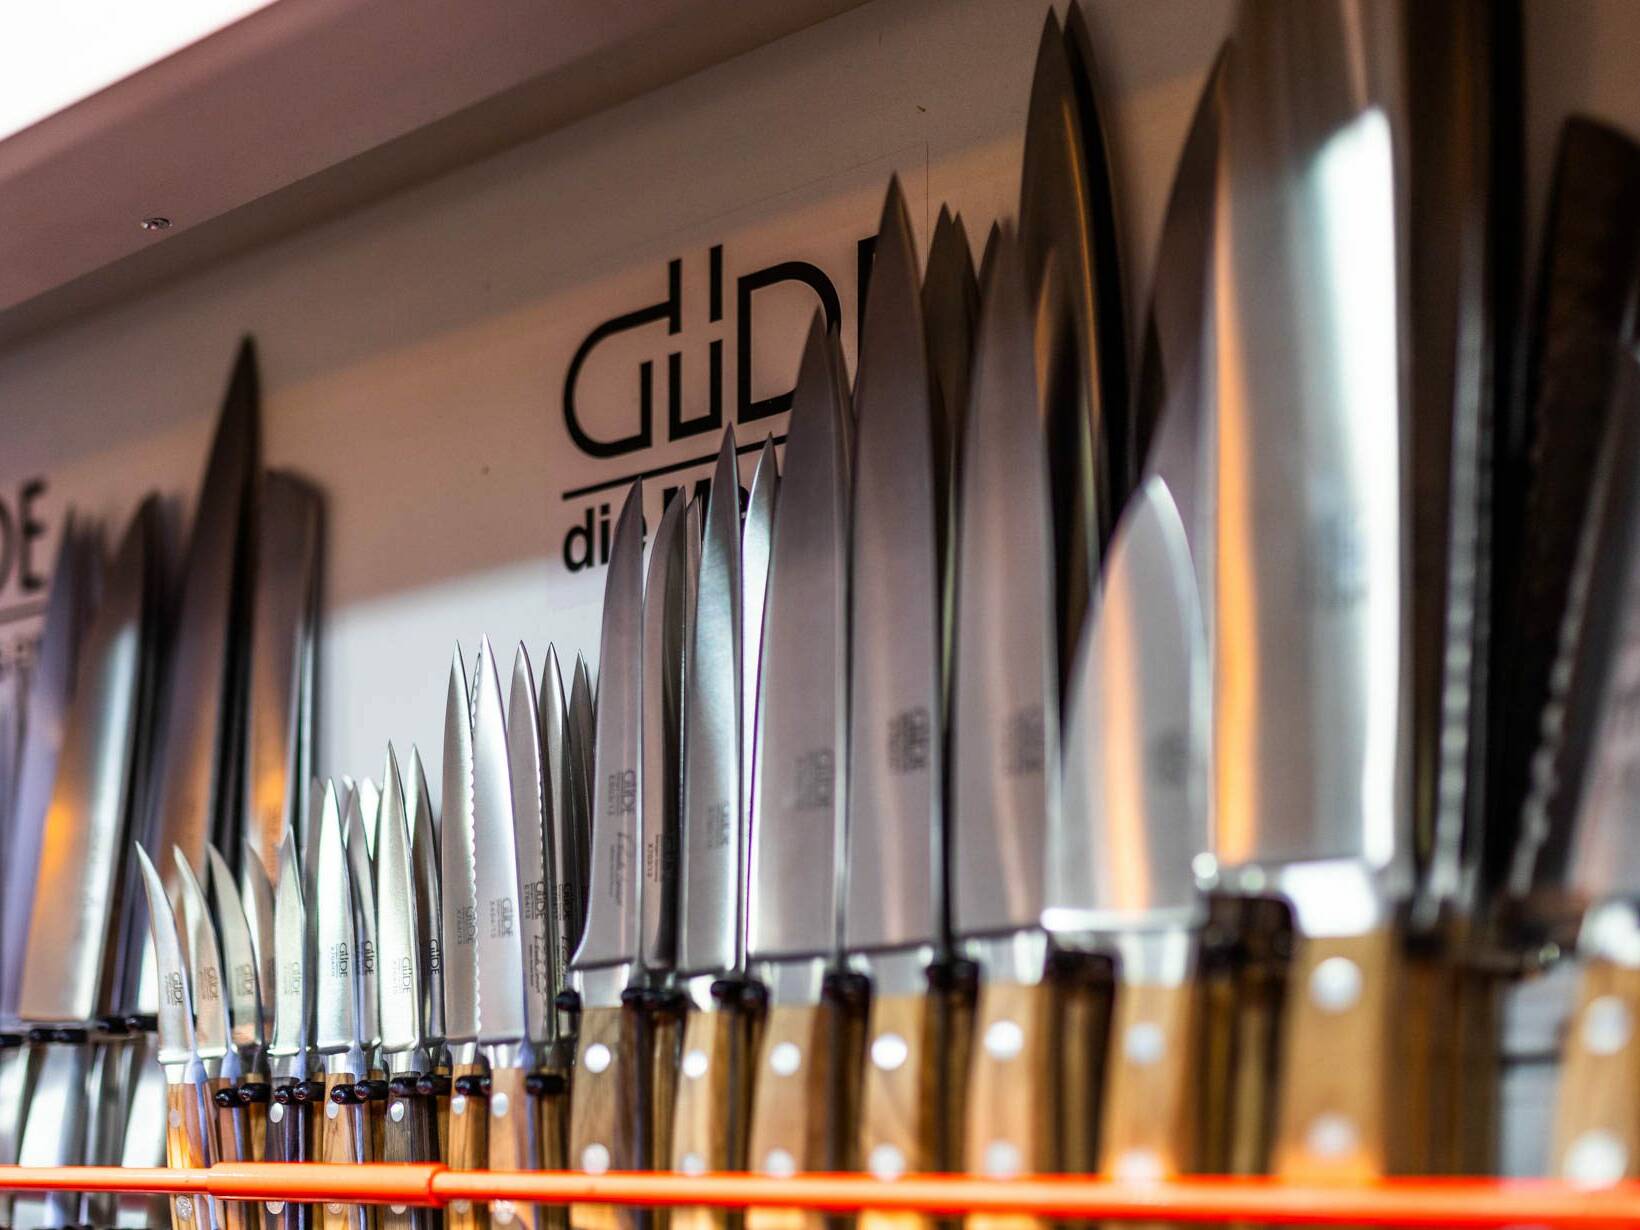 Facas Solingen, Güde facas, facas de chef Solingen, conjunto de facas, afiação de aço, facas de solinger